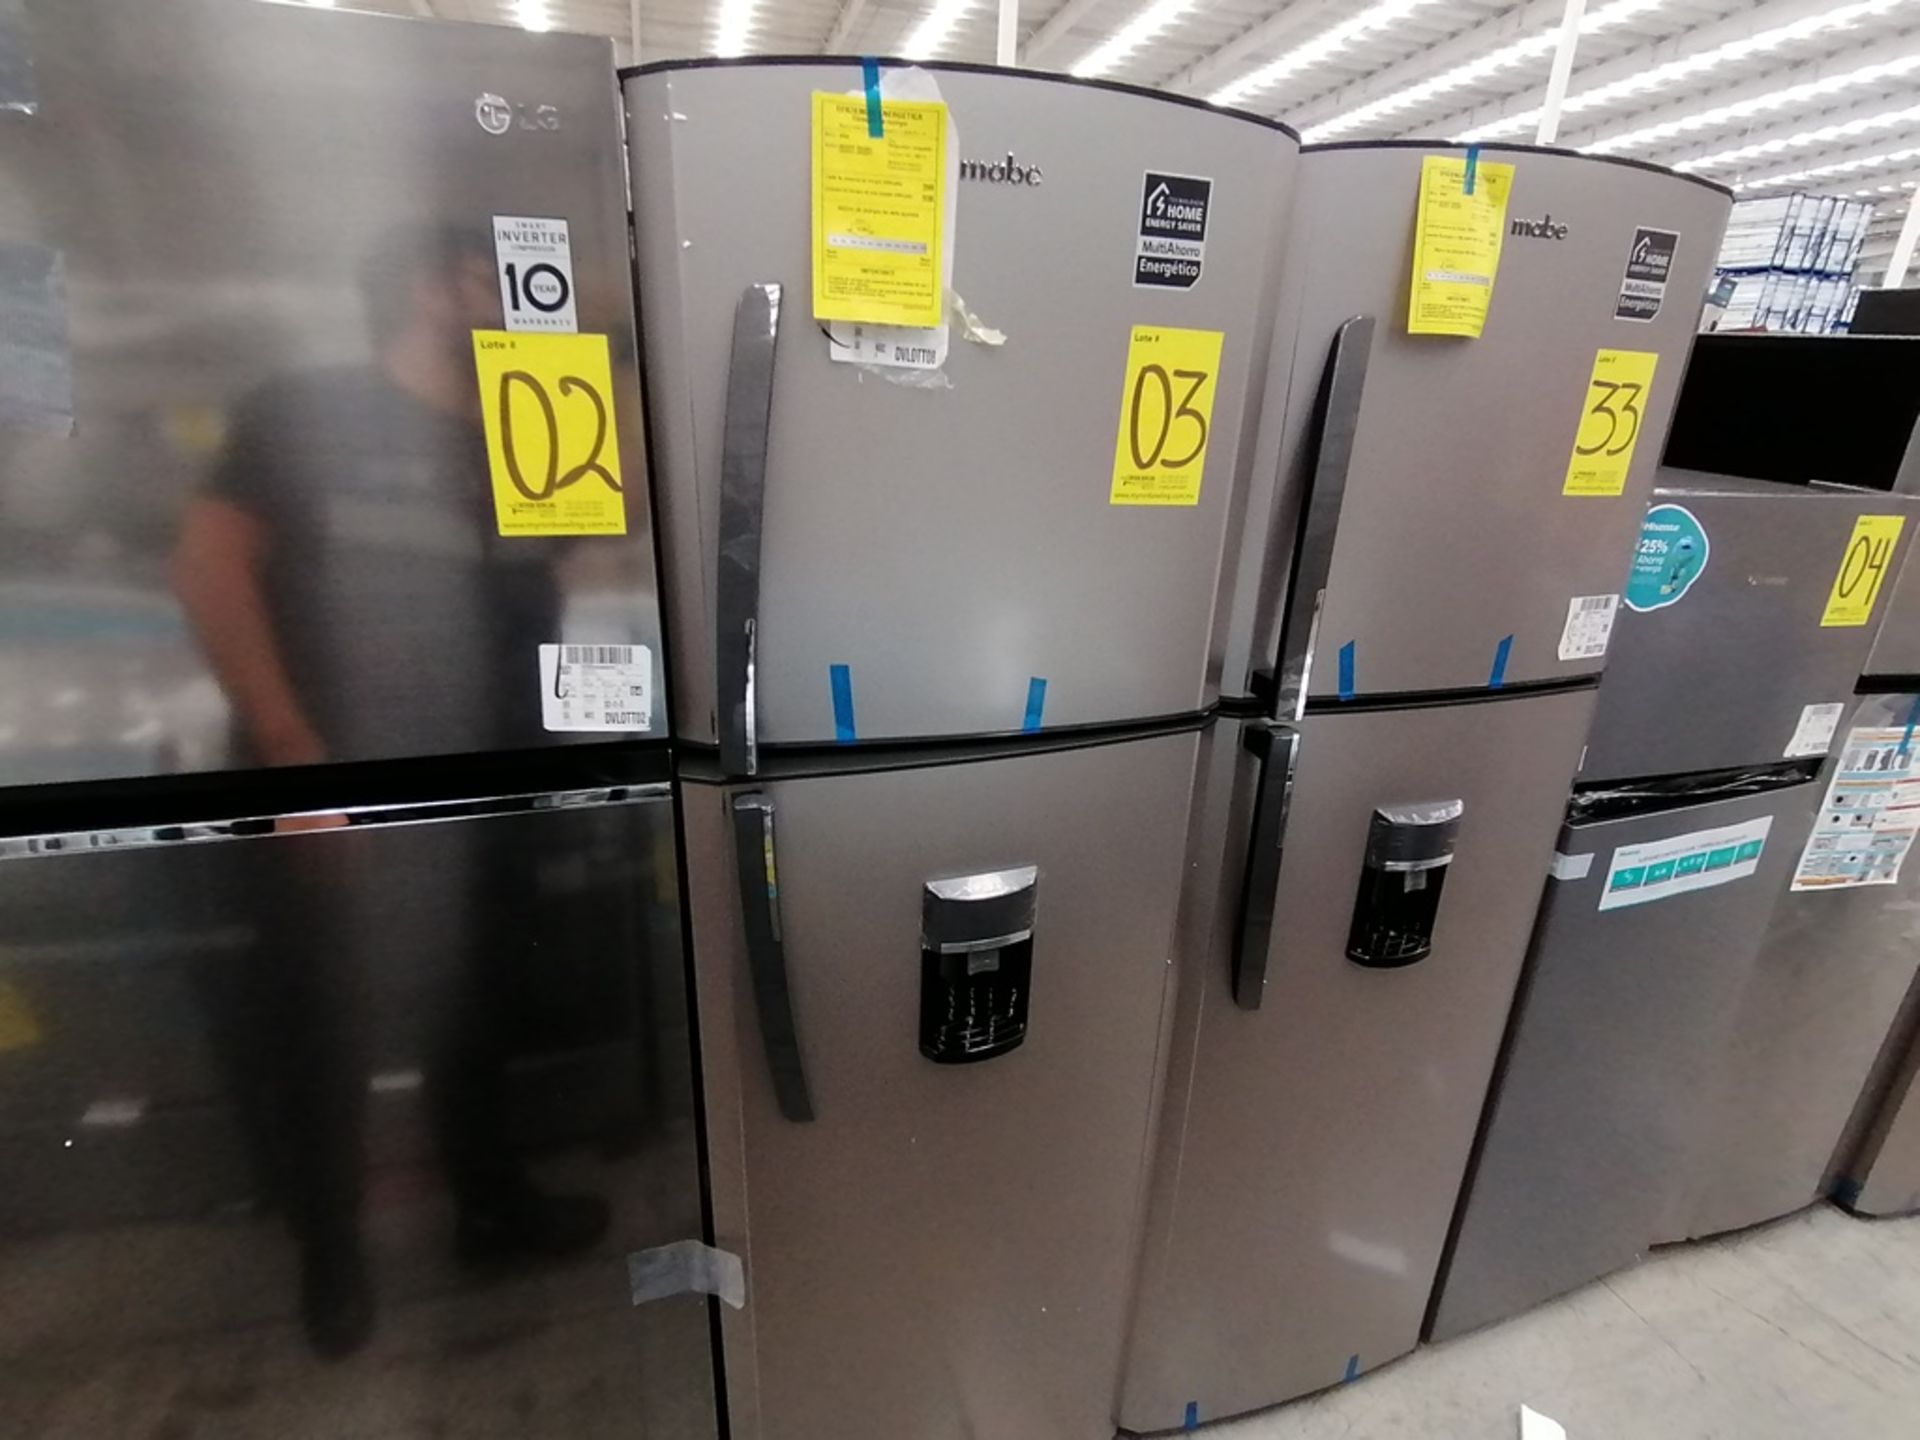 1 Refrigerador con Dispensador de Agua Marca Mabe, Color Gris, Modelo RMA300FJMR, Serie 2112B707142 - Image 4 of 13